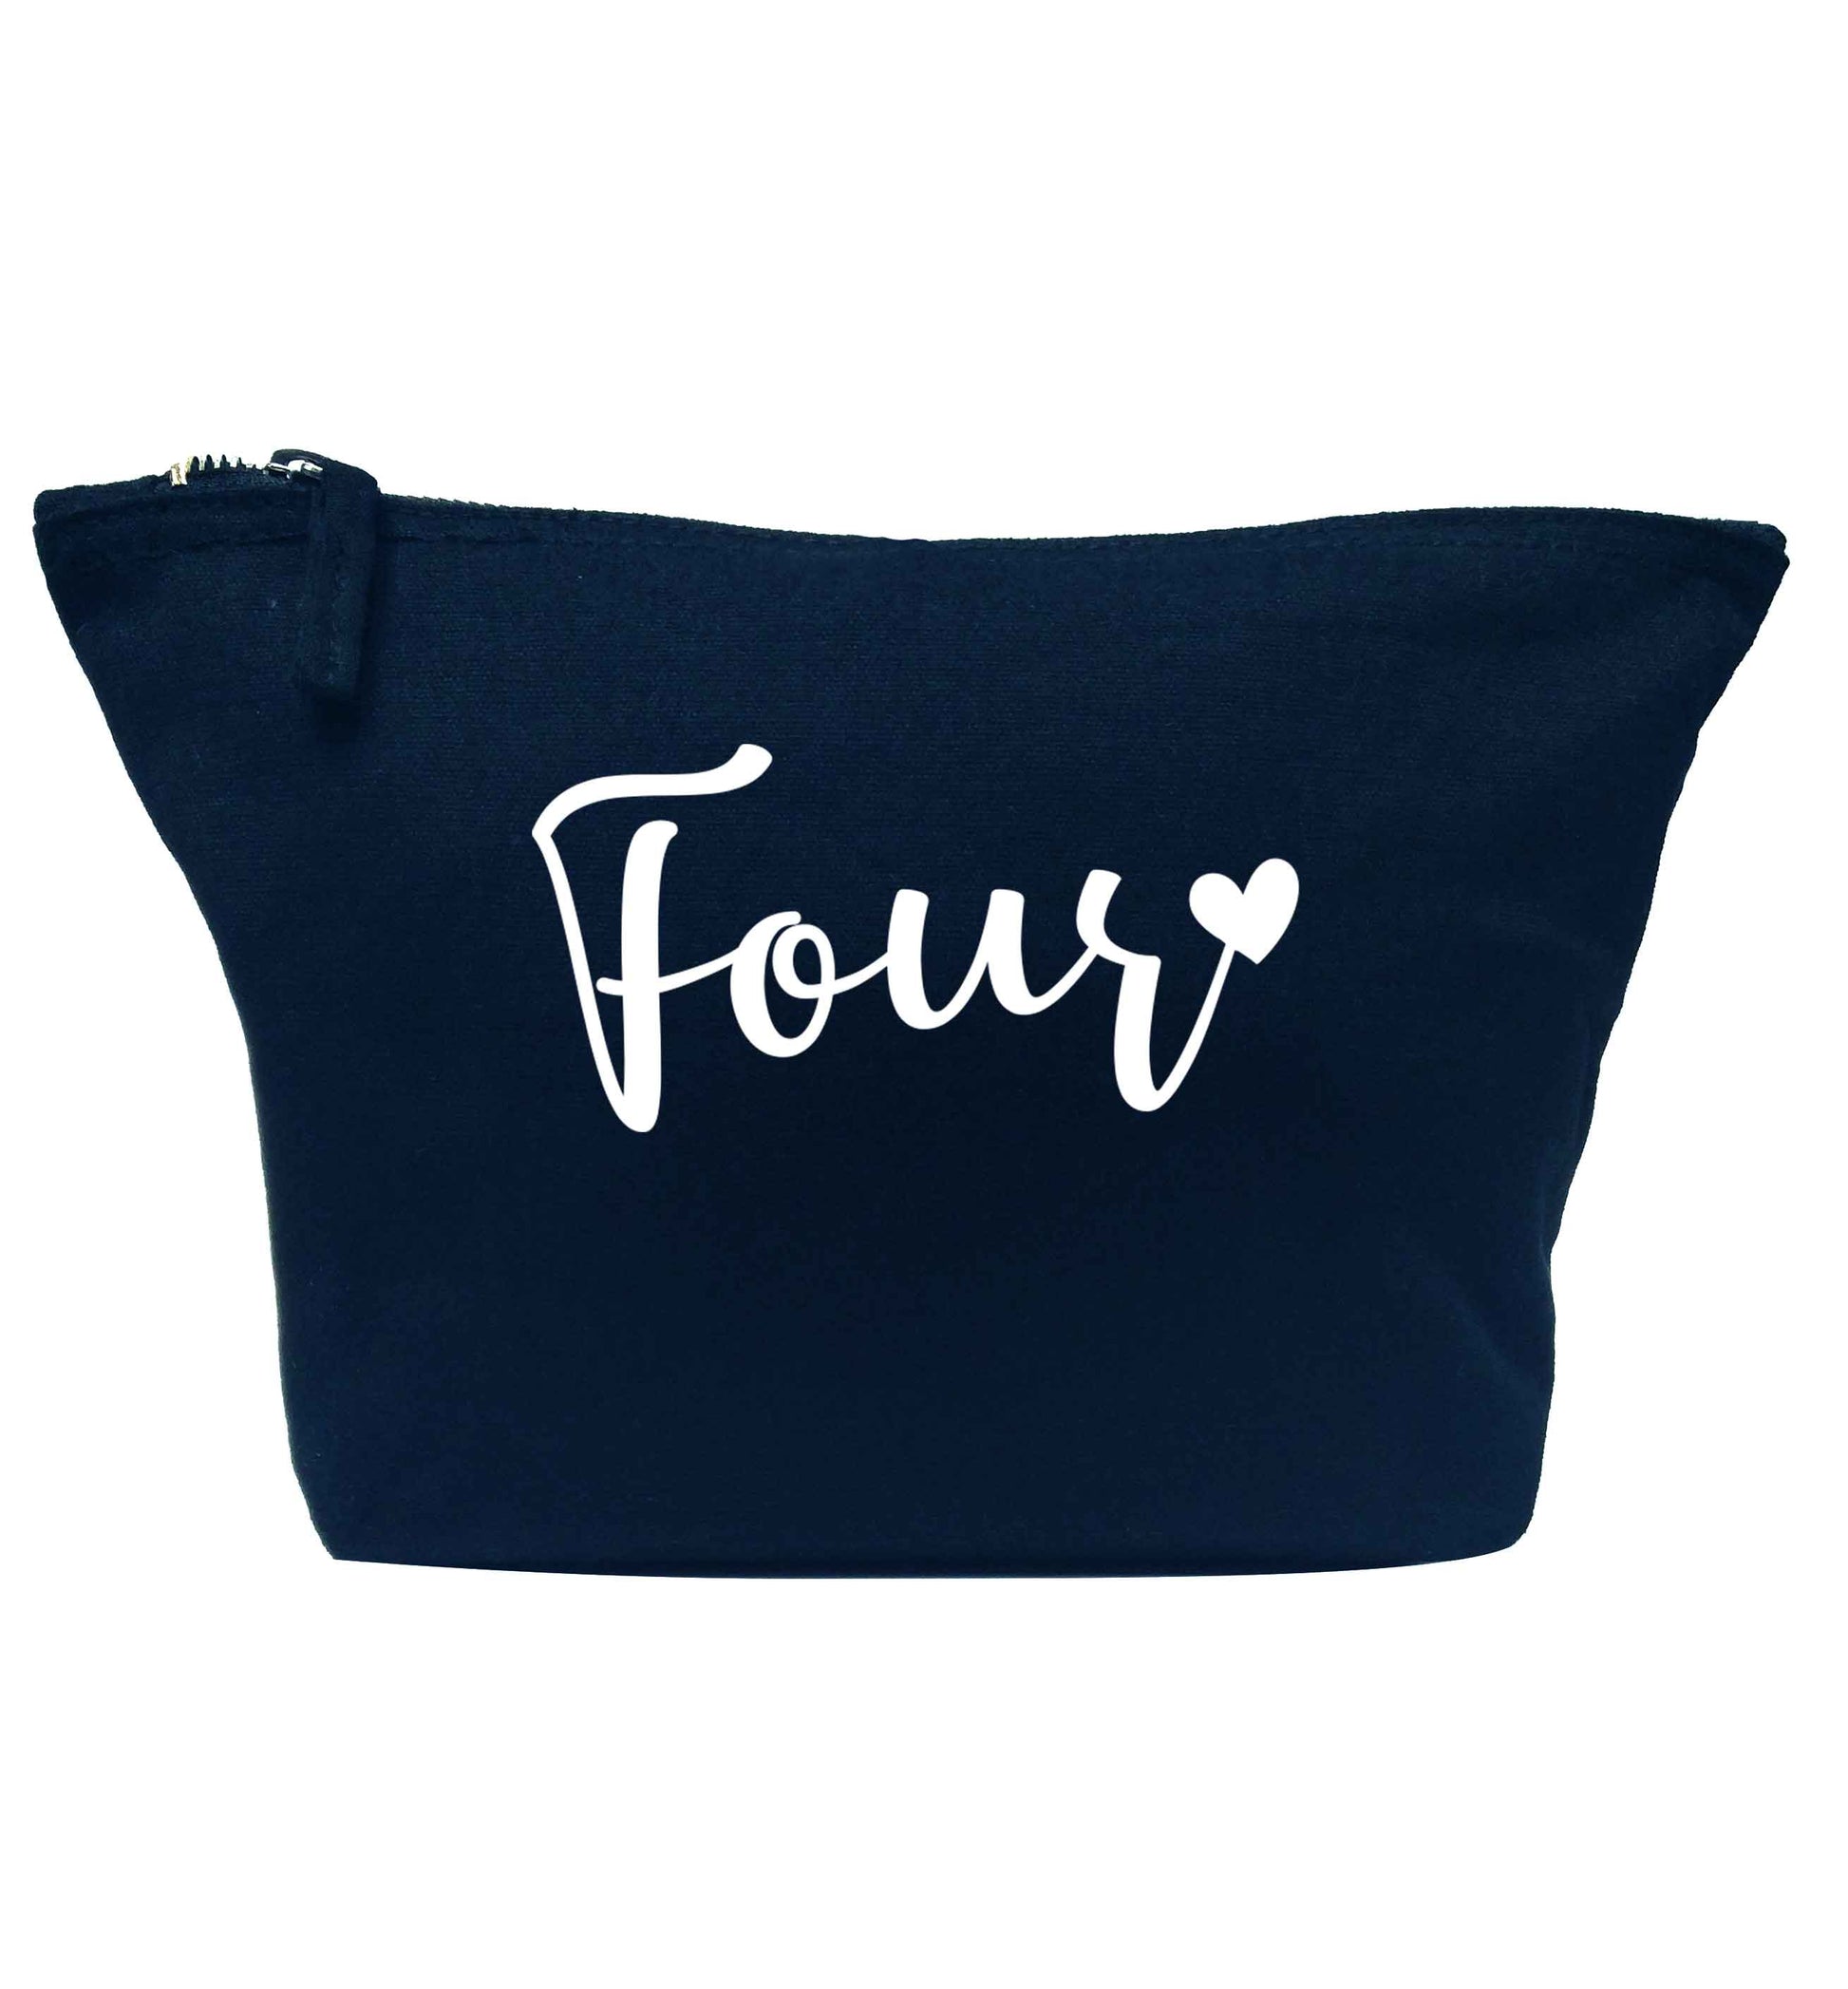 Four and heart navy makeup bag